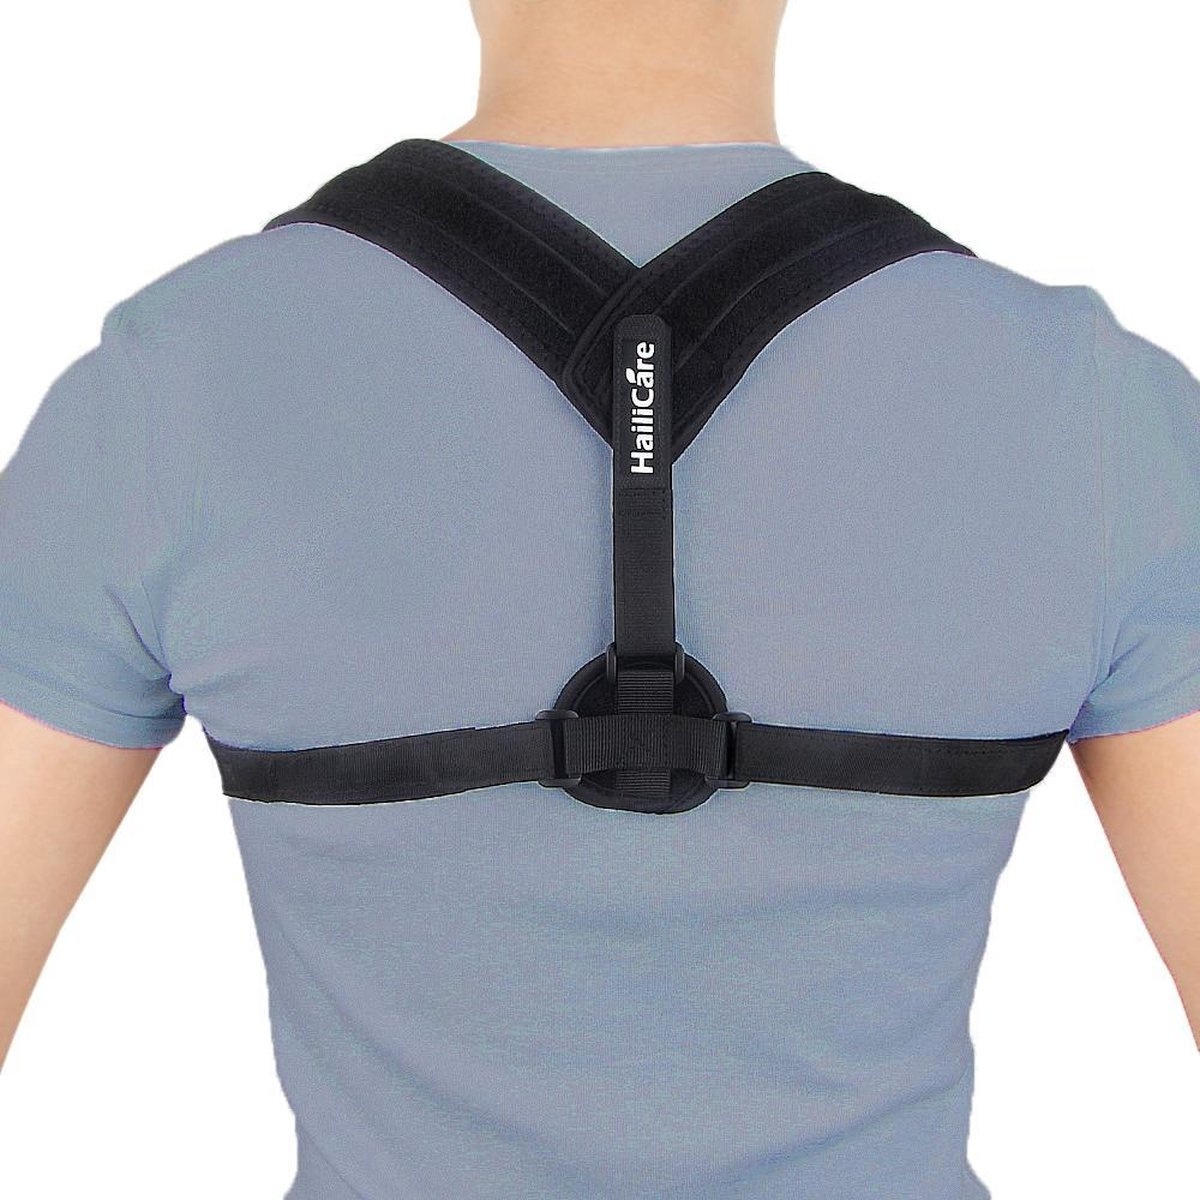 Athena günstig Kaufen-Rückenbandage - Einheitsgröße - Die Original Athena Premium Rückenbandage - Haltungskorrekturbandage - Rücken und Schulter. Rückenbandage - Einheitsgröße - Die Original Athena Premium Rückenbandage - Haltungsko